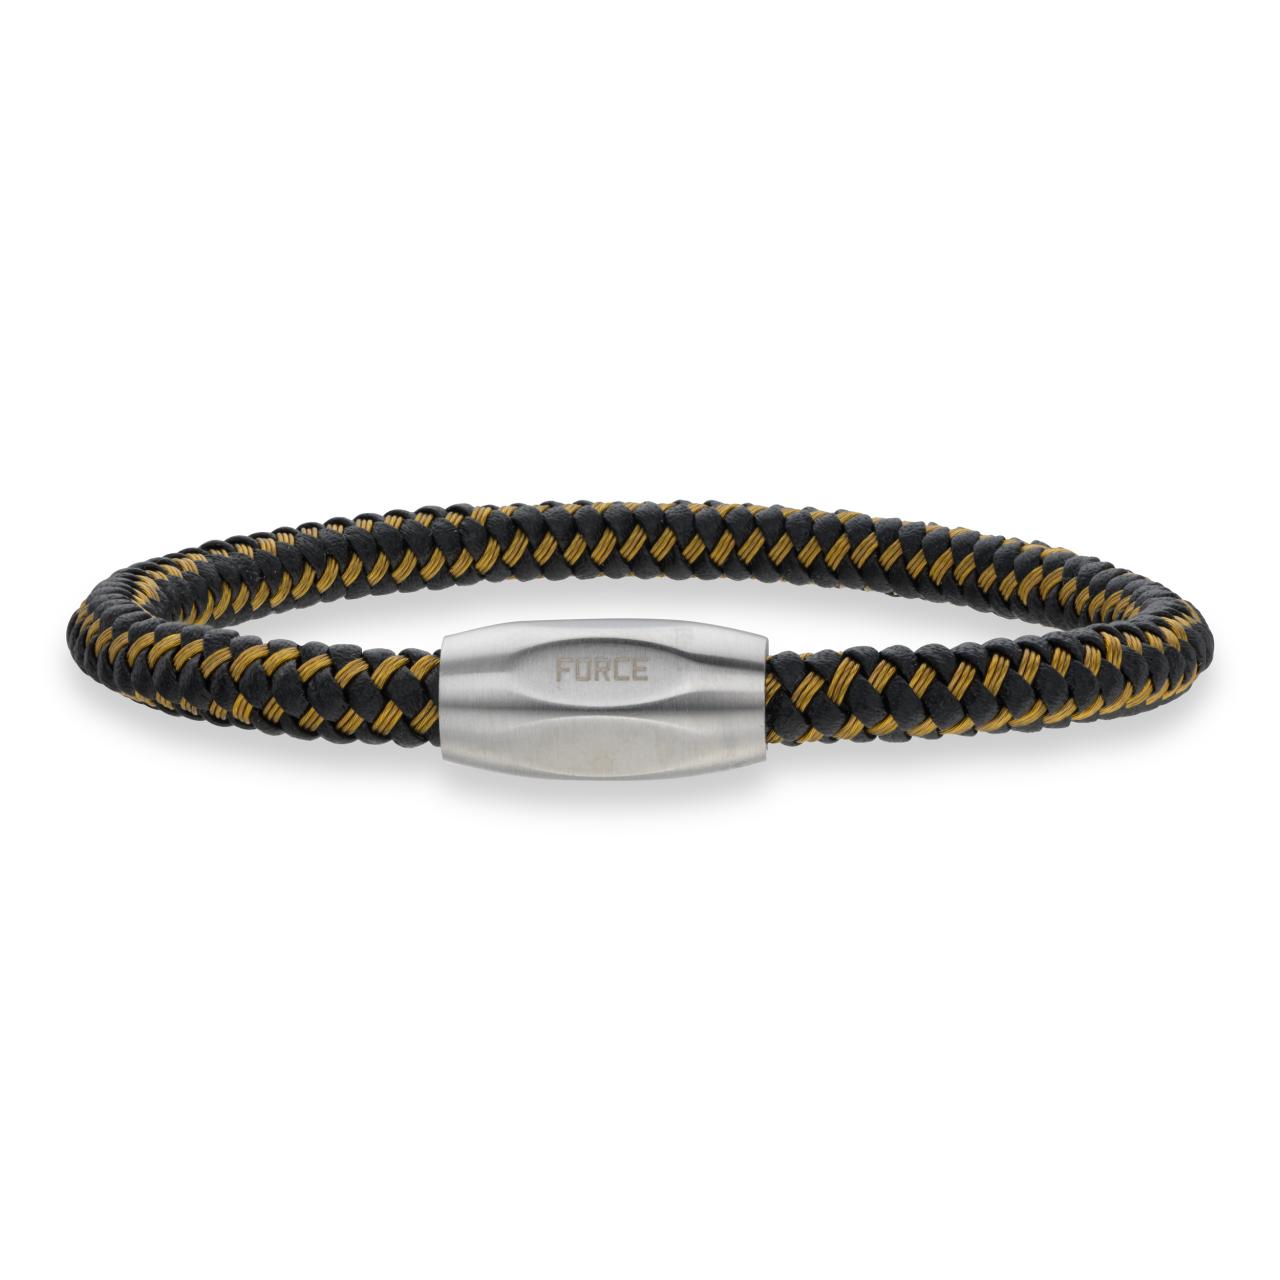 Force armbånd guld kabel/sort læder stål lås 19cm